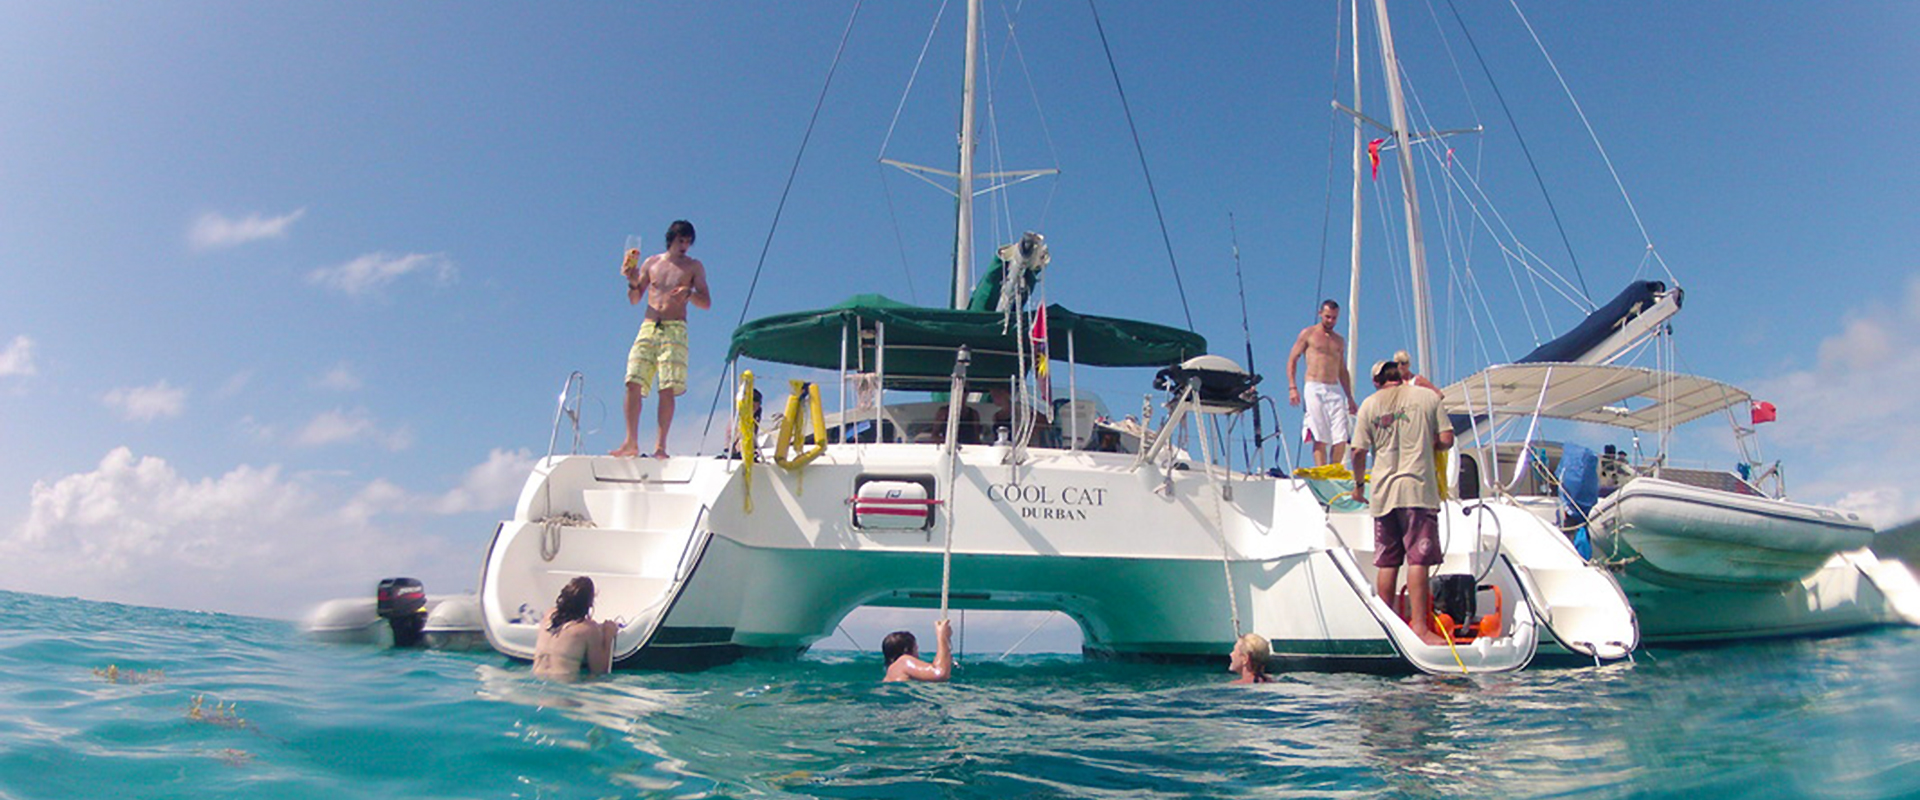 visitors having fun on cool cat catamaran